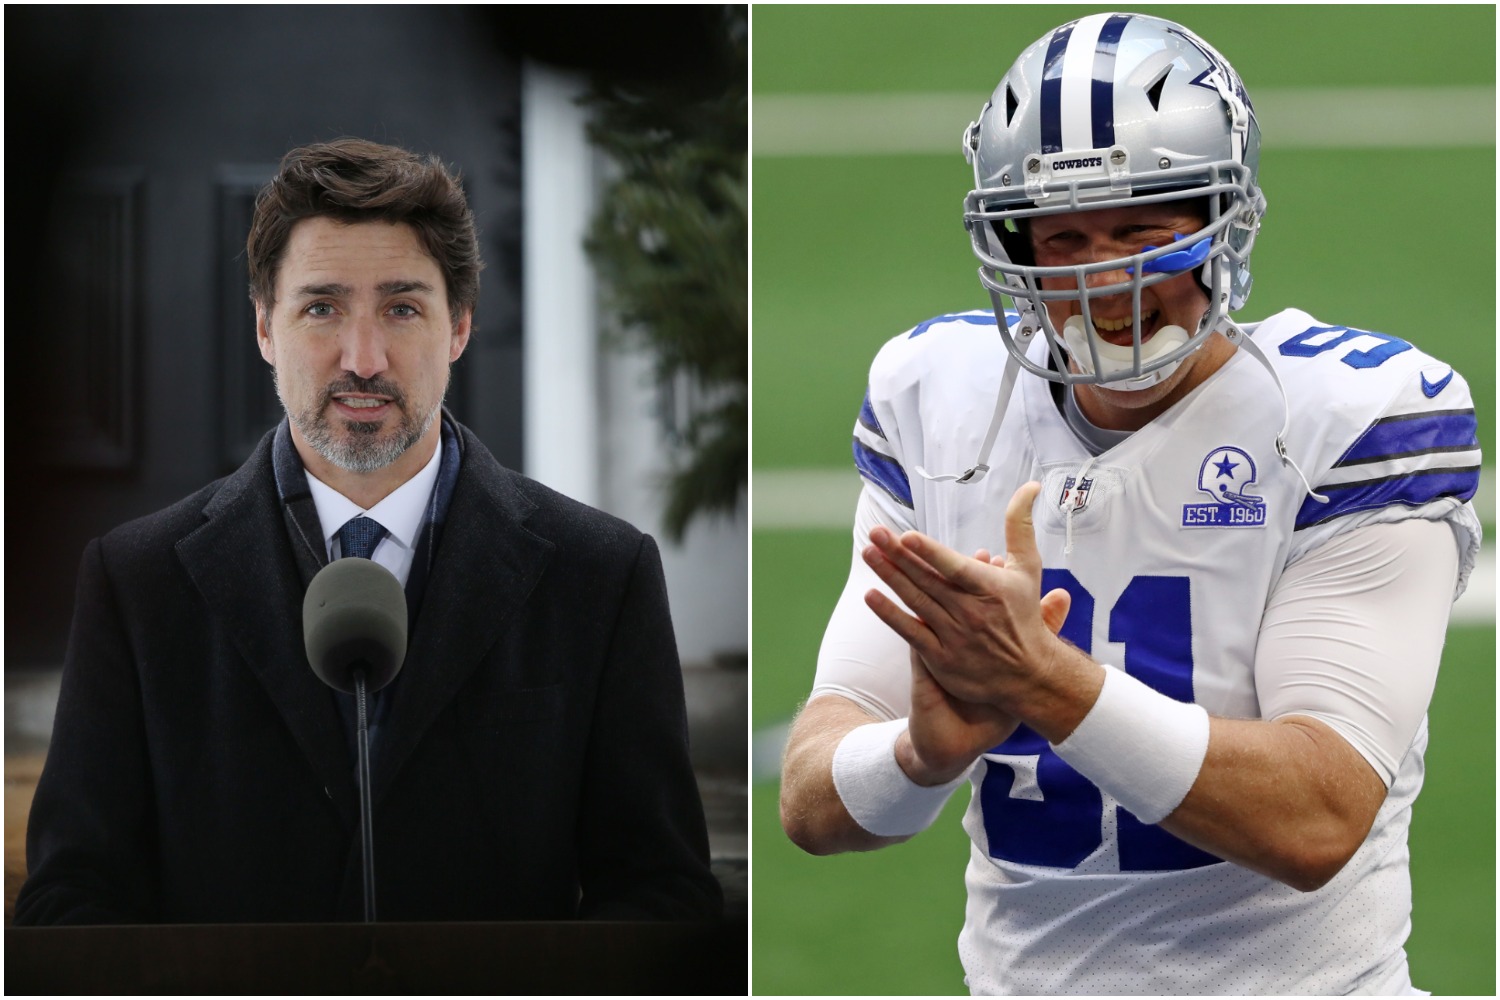 Canadian Prime Minister Justin Trudeau gave a huge public shoutout to Dallas Cowboys long snapper L.P. Ladouceur